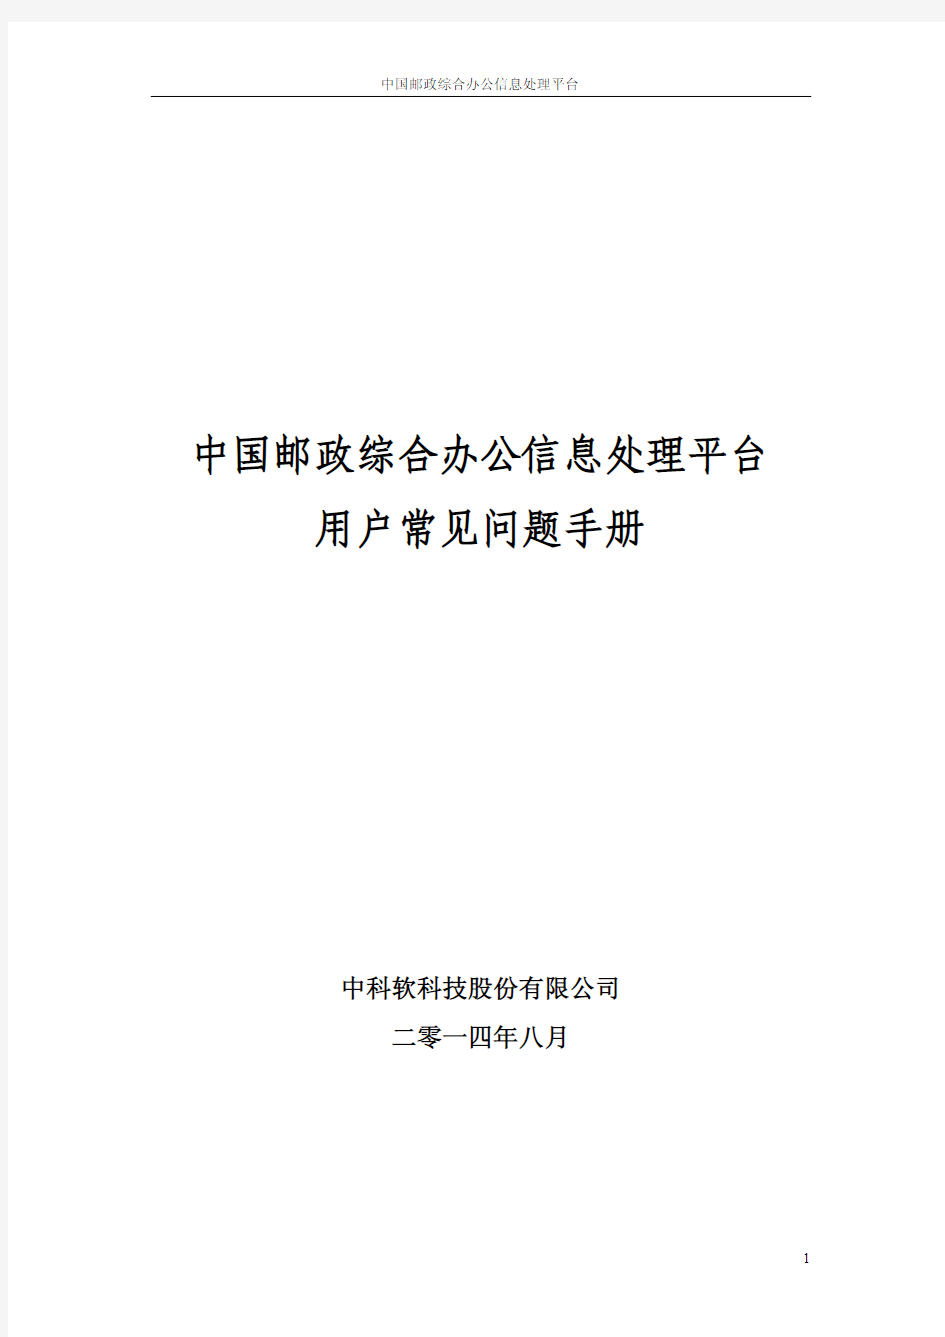 中国邮政综合办公信息处理平台用户常见问题手册V3.0